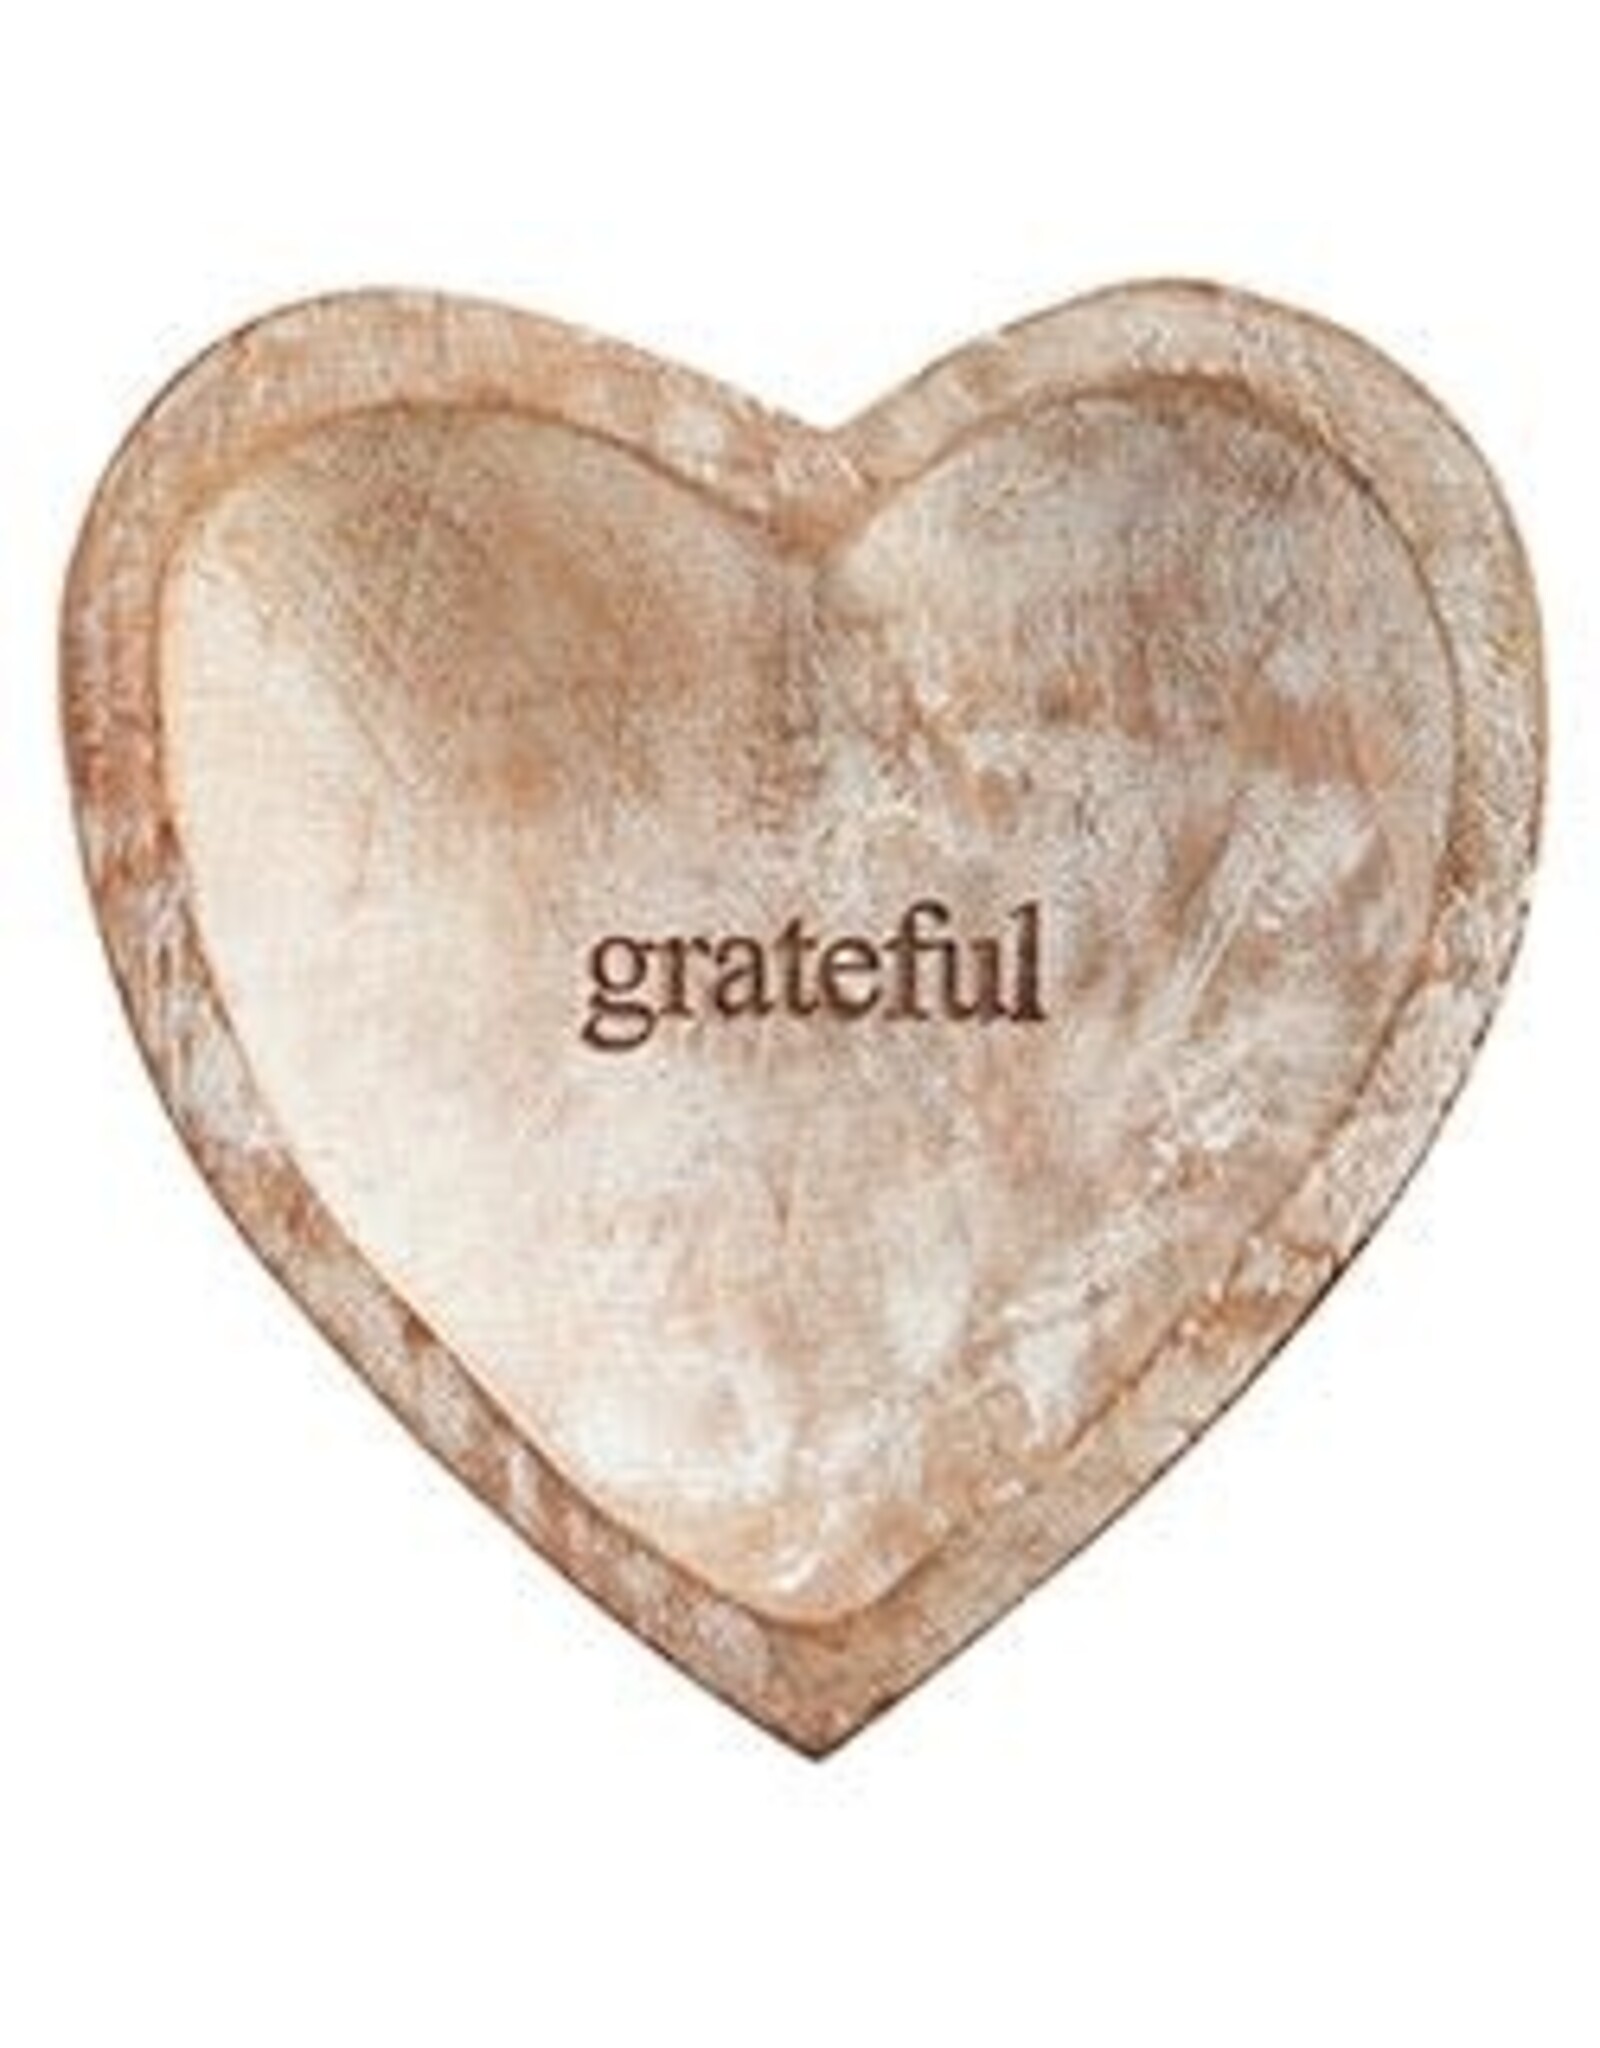 Wooden Heart - Grateful